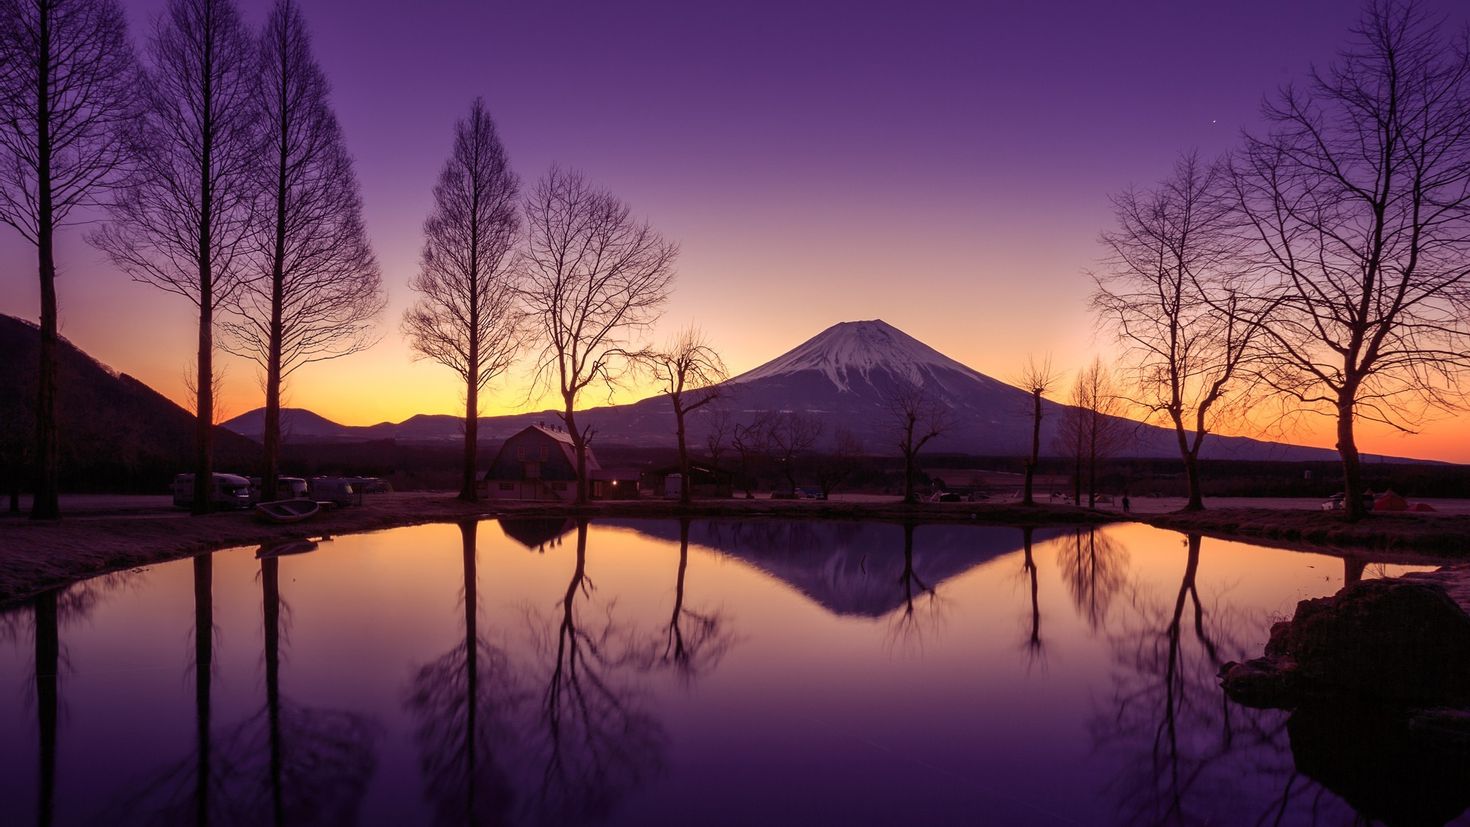 Mount fuji purple wallpaper engine. 4. Гора Фудзи (остров Хонсю). Озеро Хонсю. Япония Фудзияма рассвет. Гора Фудзи, остров Хонсю, Япония обои.